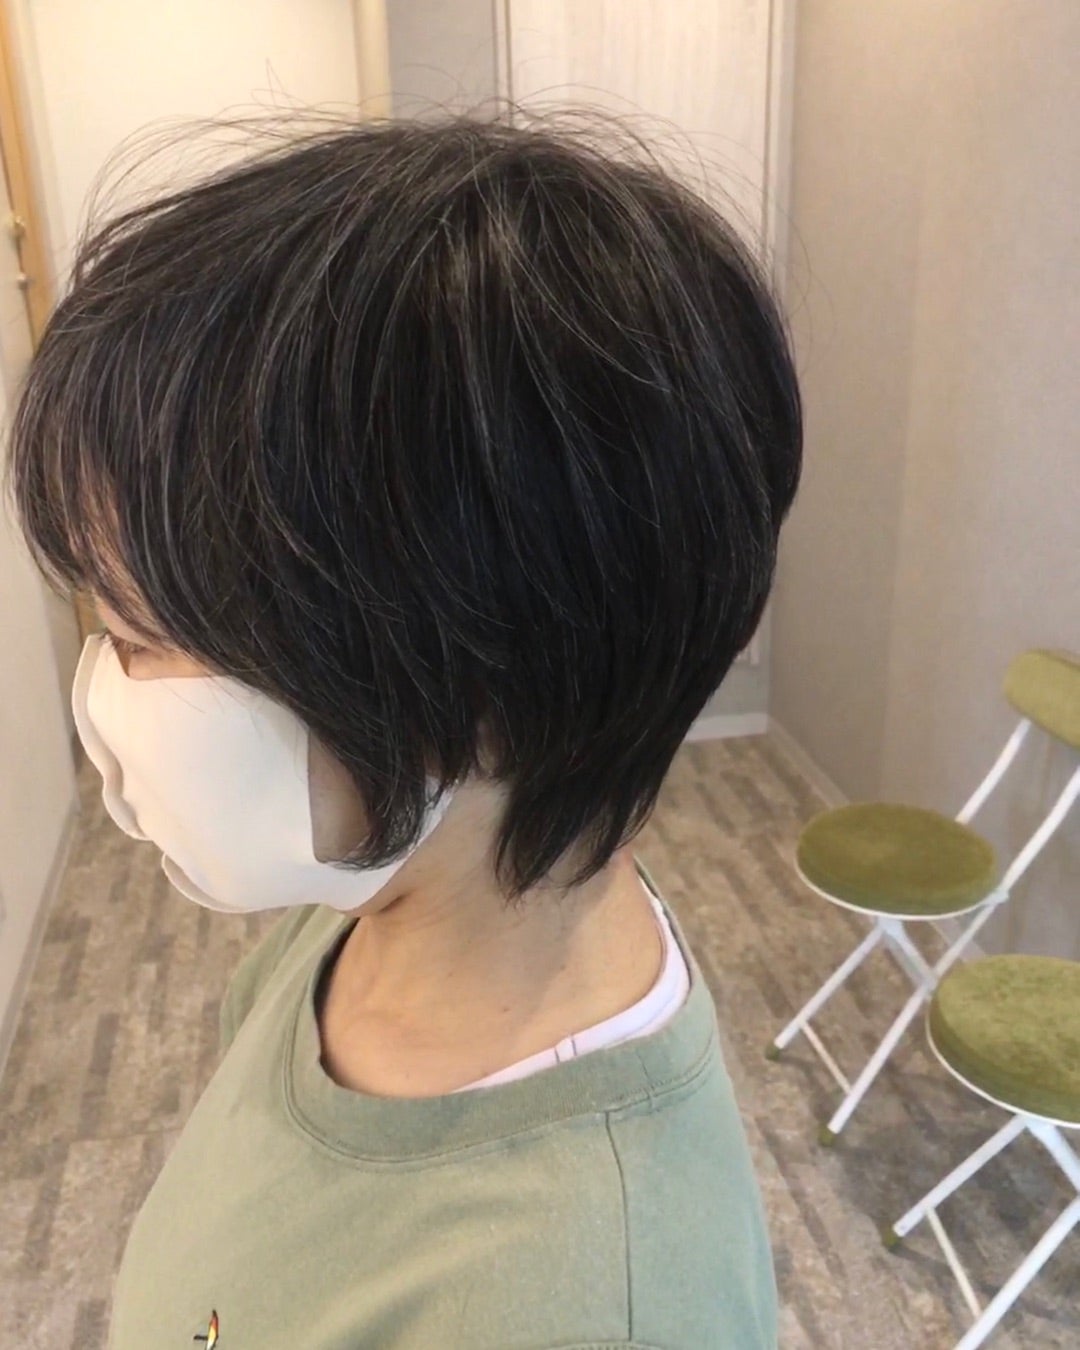 髪型・大人ショートレイヤー。 40代50代京都四条烏丸大人のヘアデザインに特化美容師ヘアスタイル人気ランキング